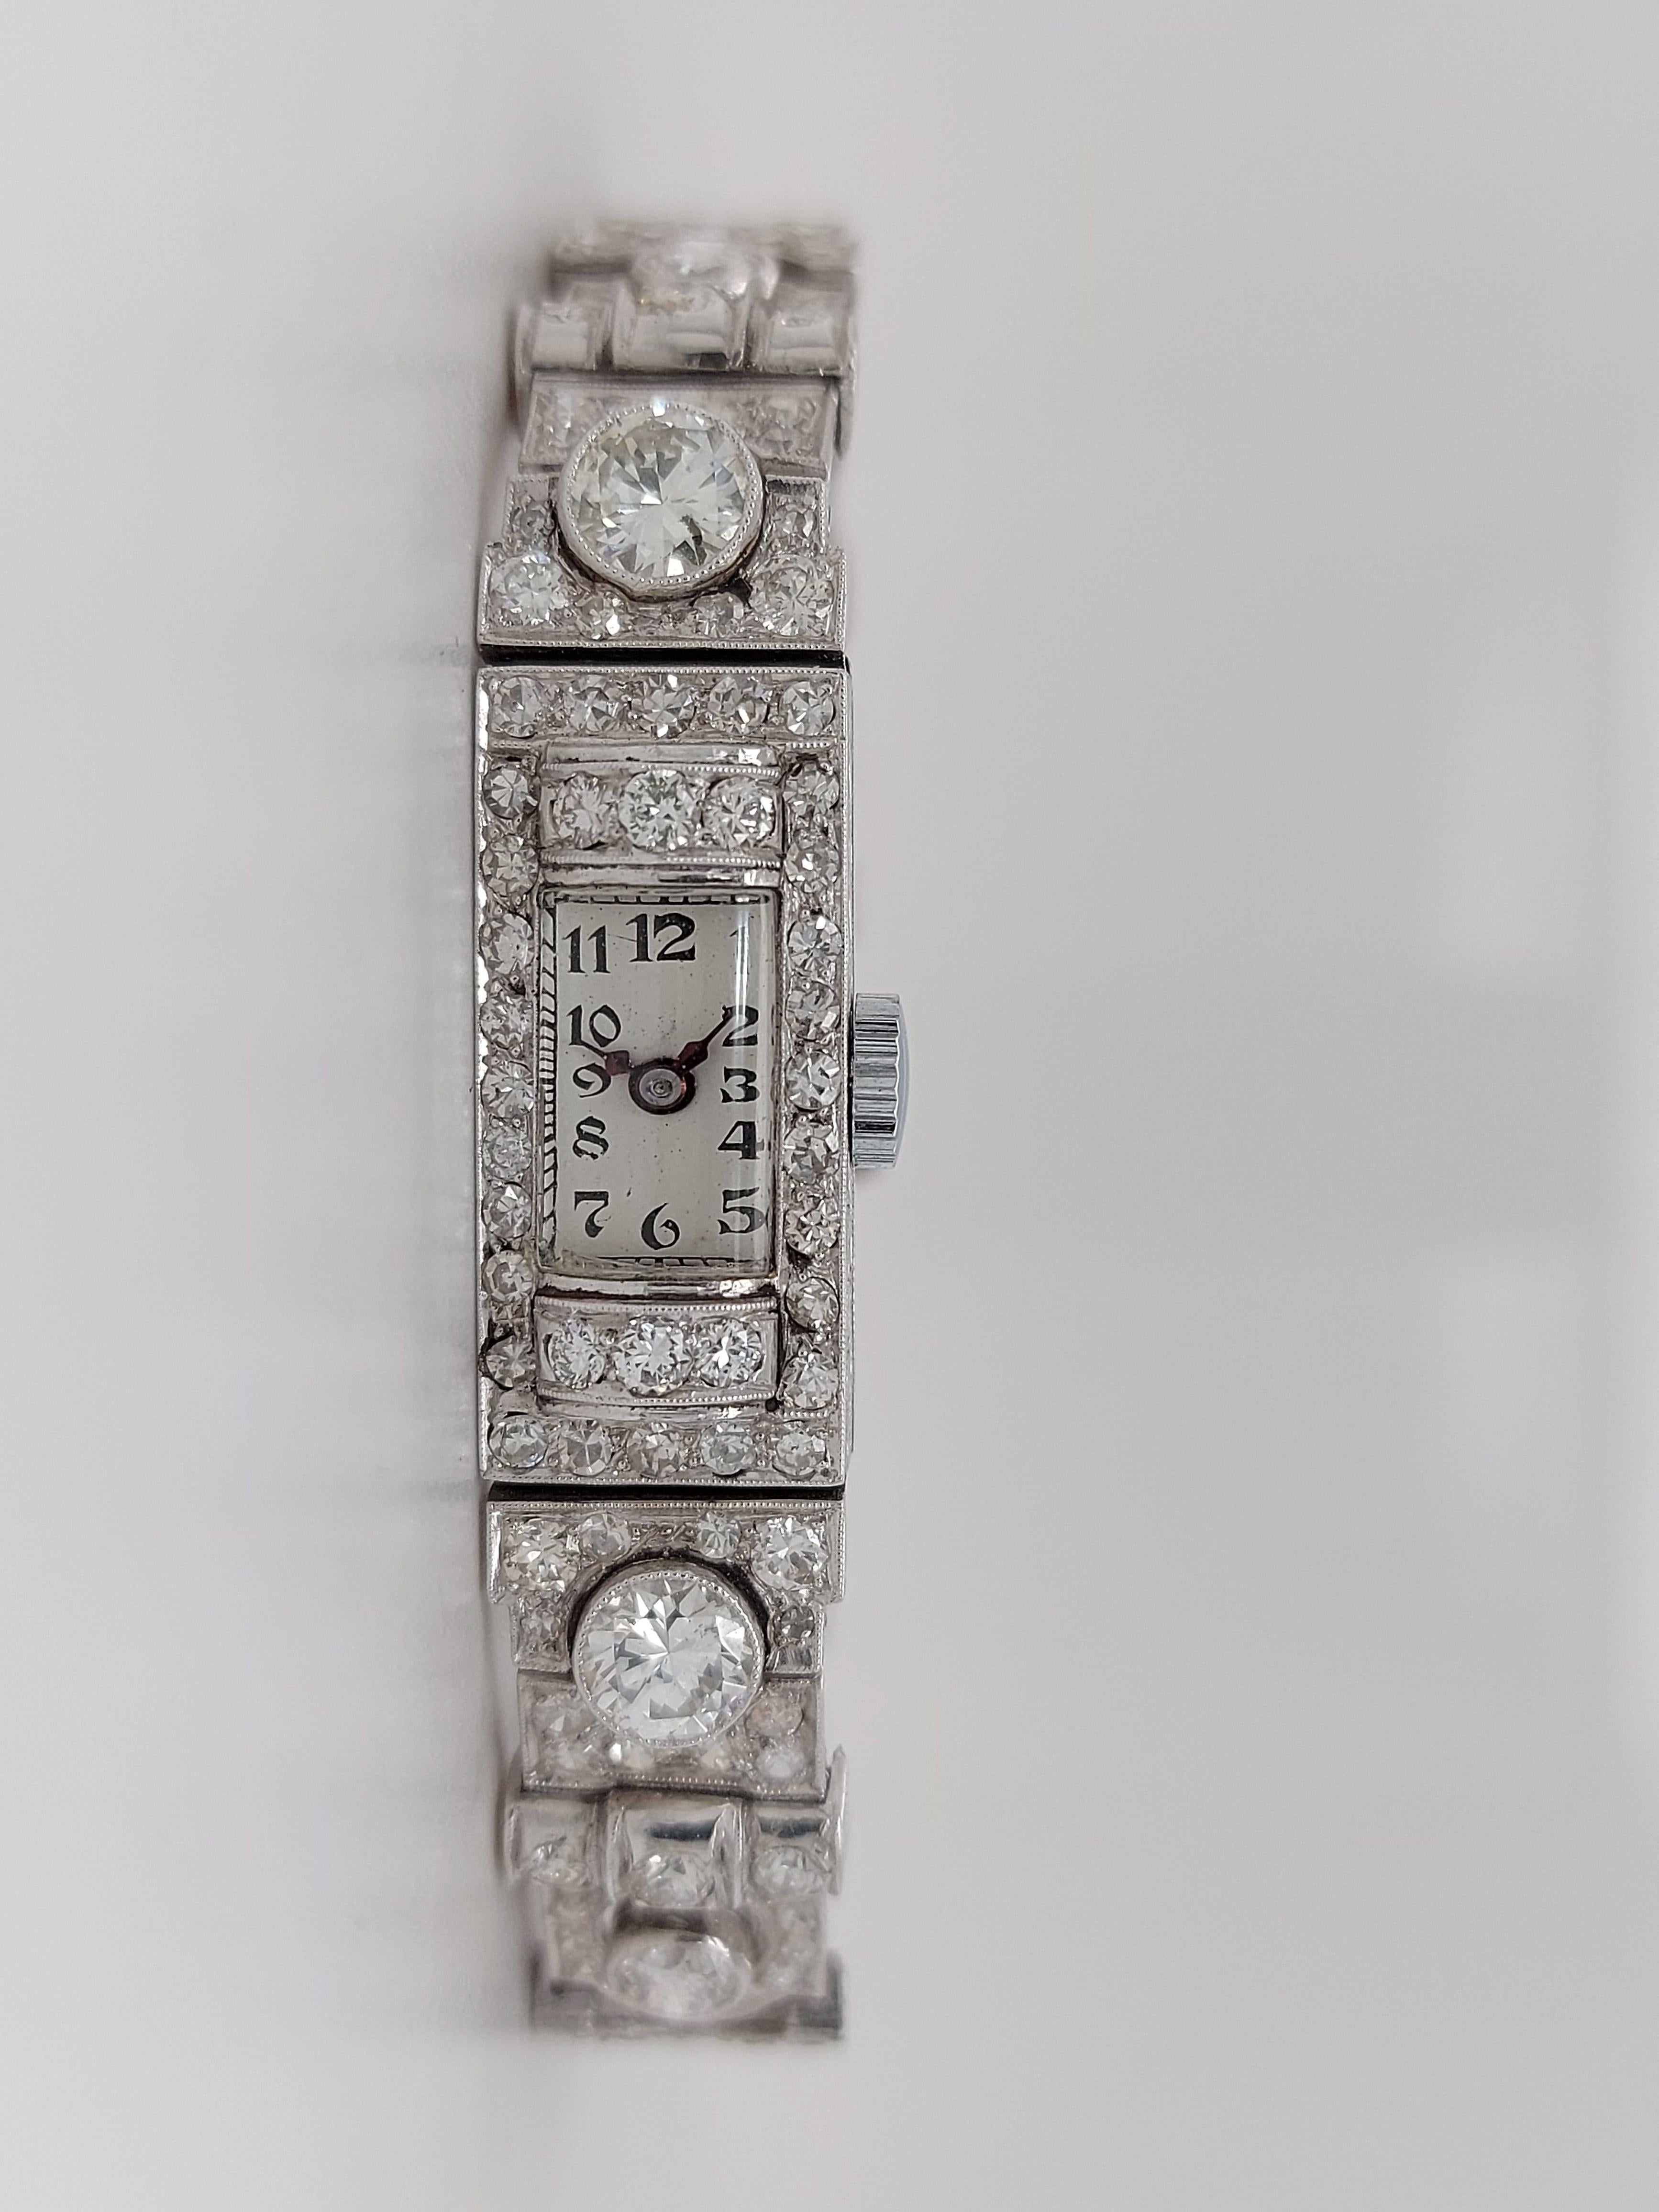 Schöne Platin-Diamant Art Deco Uhr Diamant-Armband 

Uhrwerk:Mechanischer Handaufzug 

Funktionen: Stunden, Minuten

Material: Platin

Gehäuse: Gehäuselänge 10 mm x Höhe 22,5 mm, Zifferblatt Abmessungen Länge 6,6 x Höhe 11 mm,